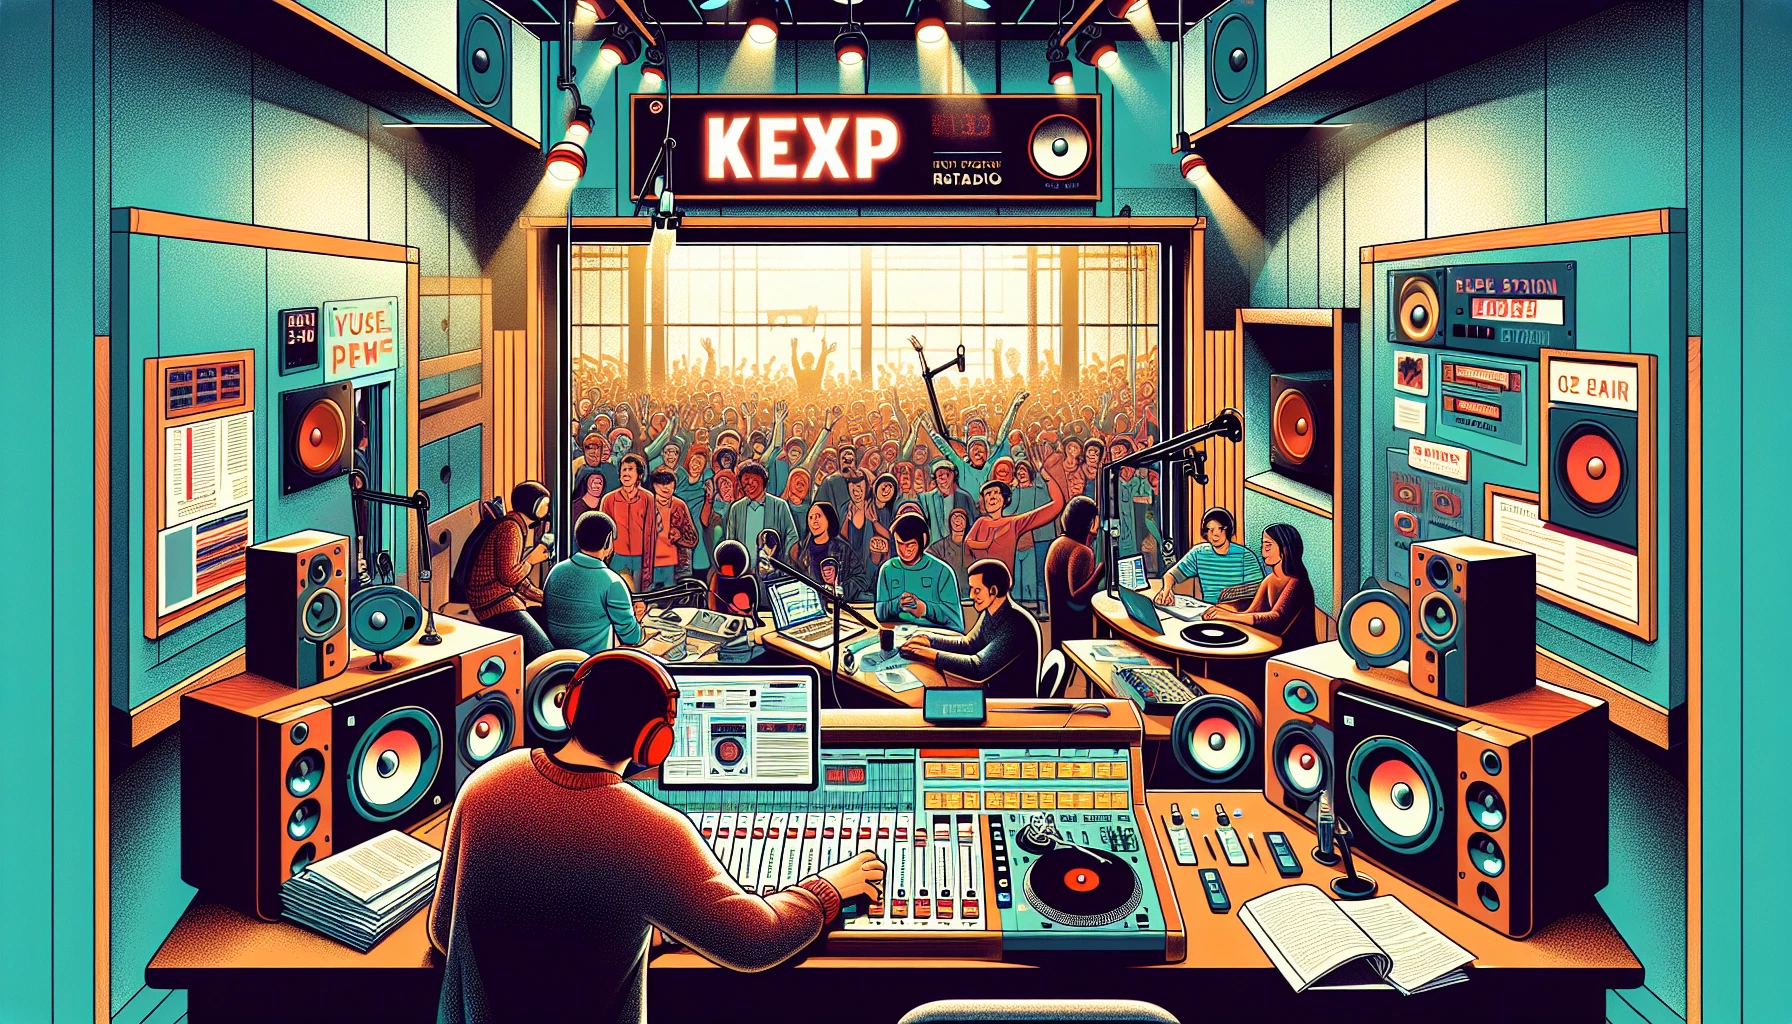 La montée de KEXP: Communication et connexion avec l'audience
